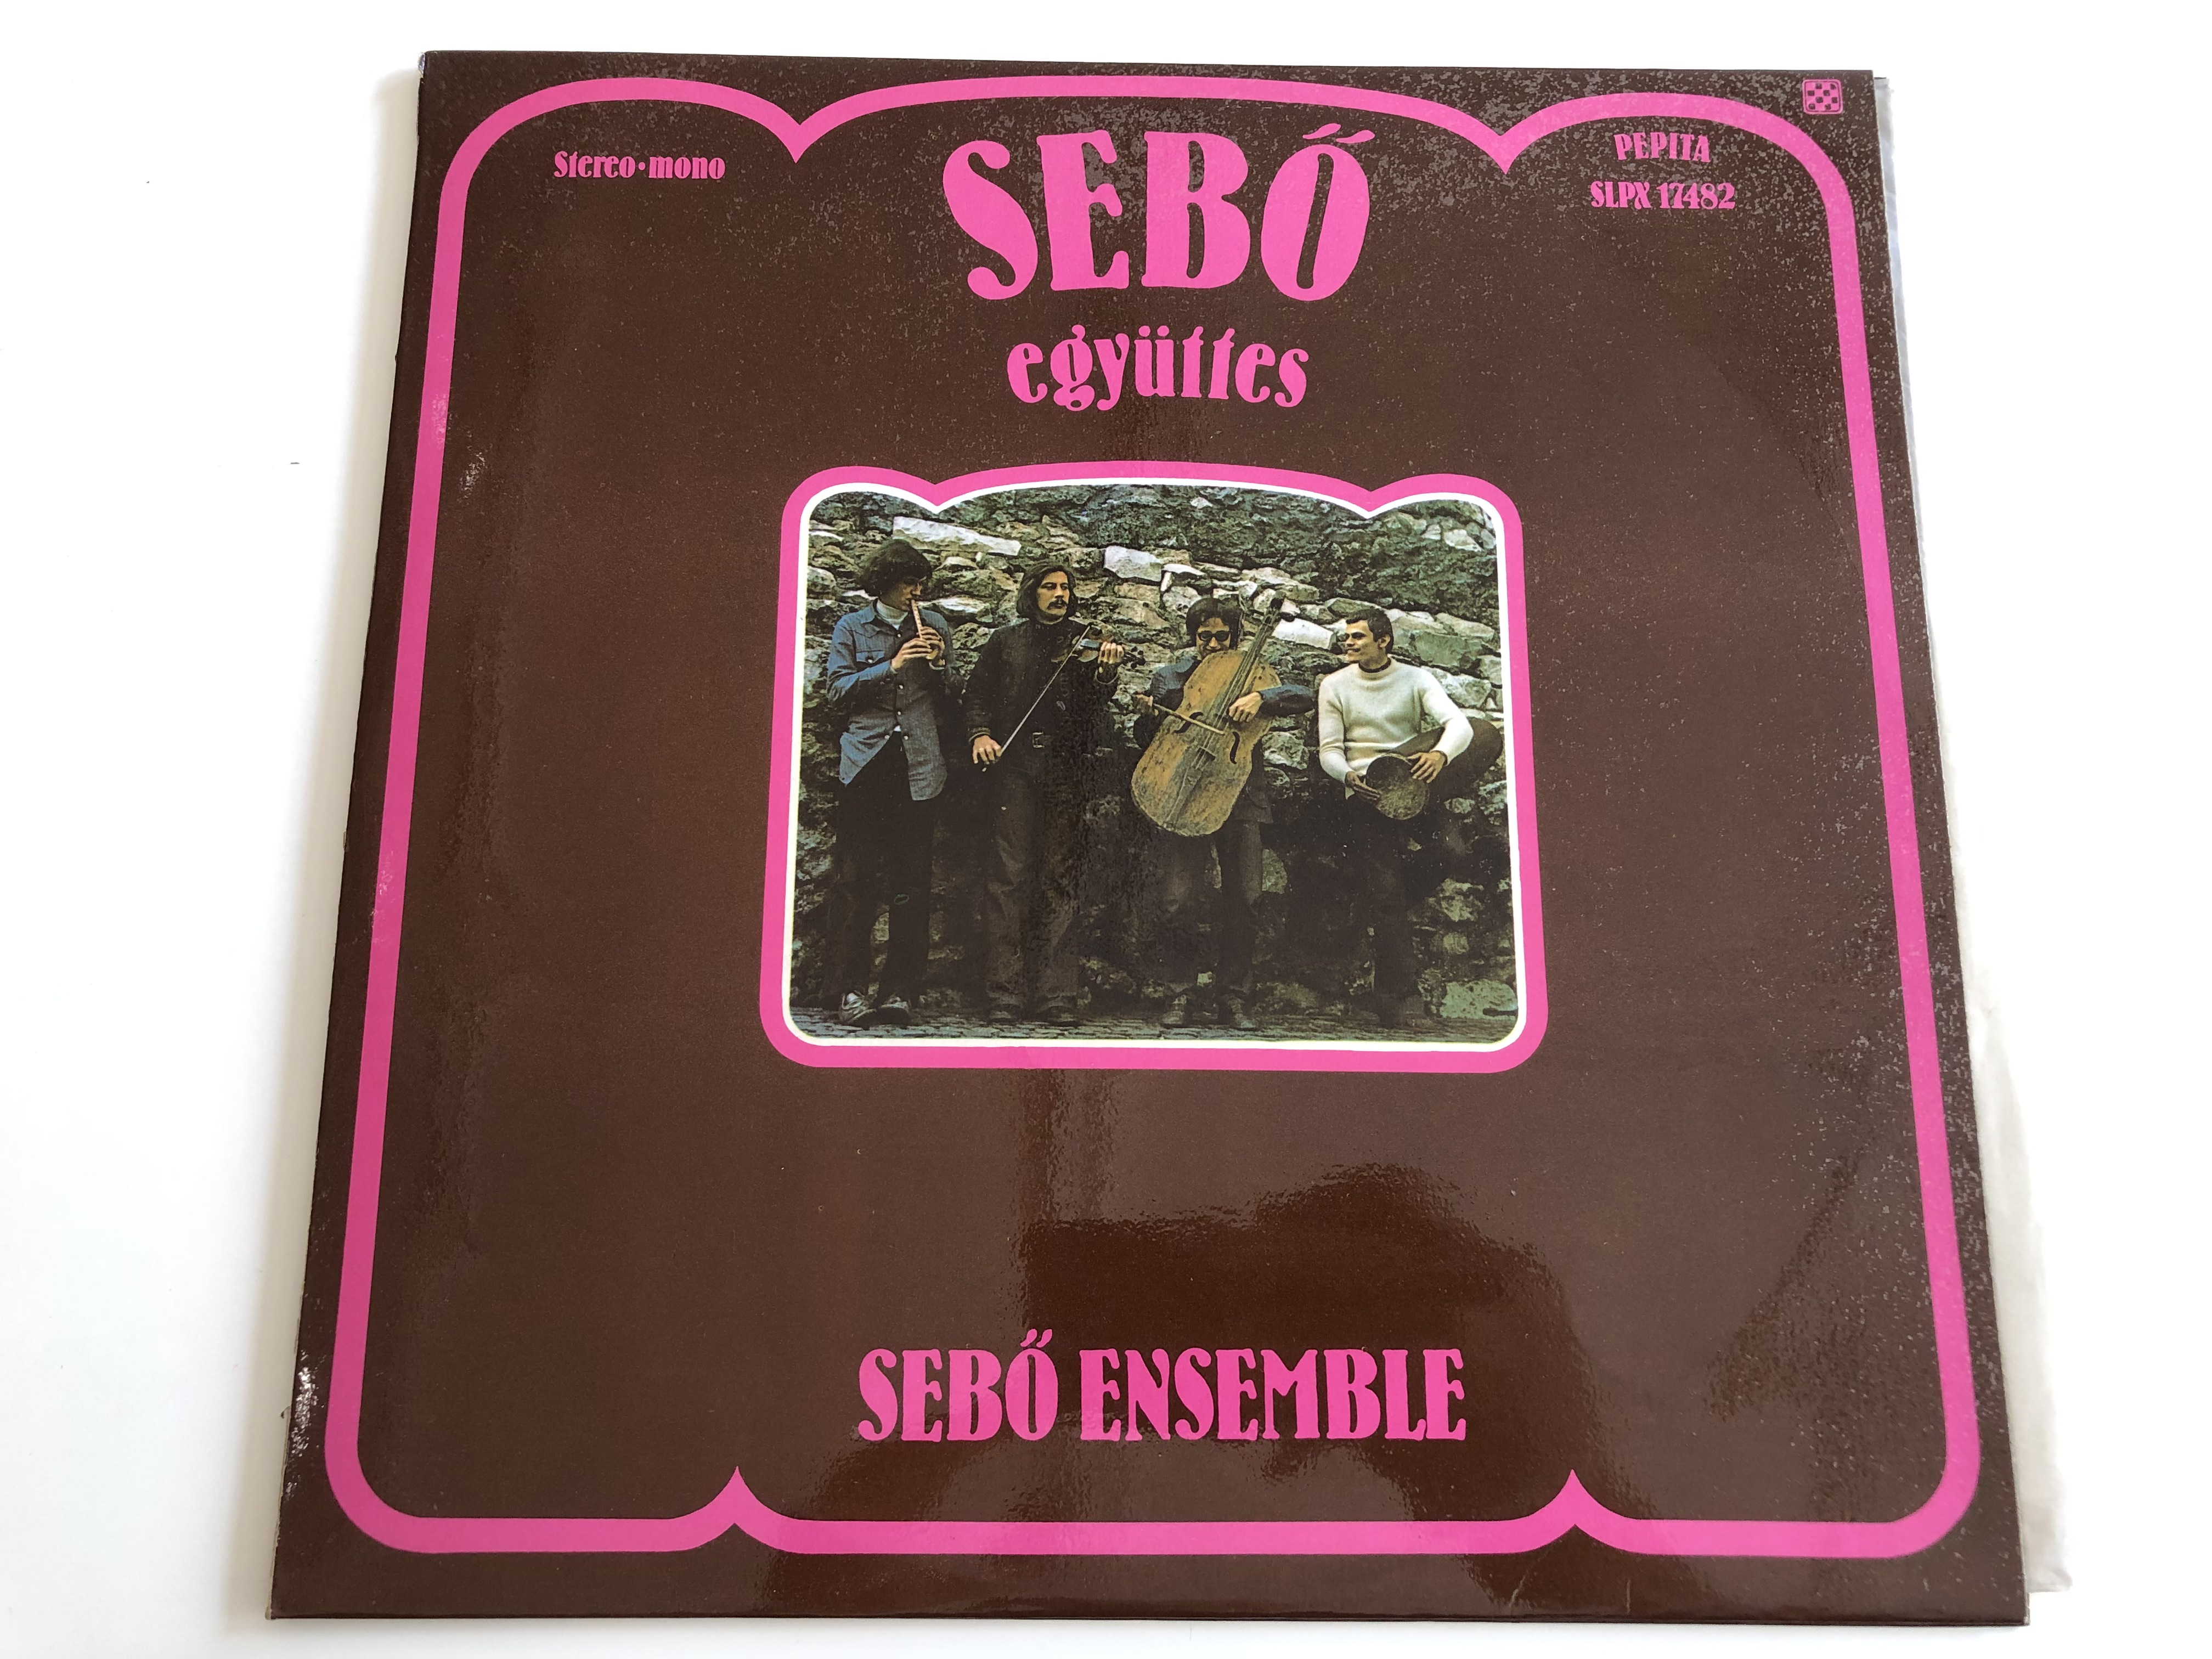 seb-egy-ttes-seb-ensemble-ferenc-sabo-pepita-lp-stereo-mono-slpx-17482-1-.jpg